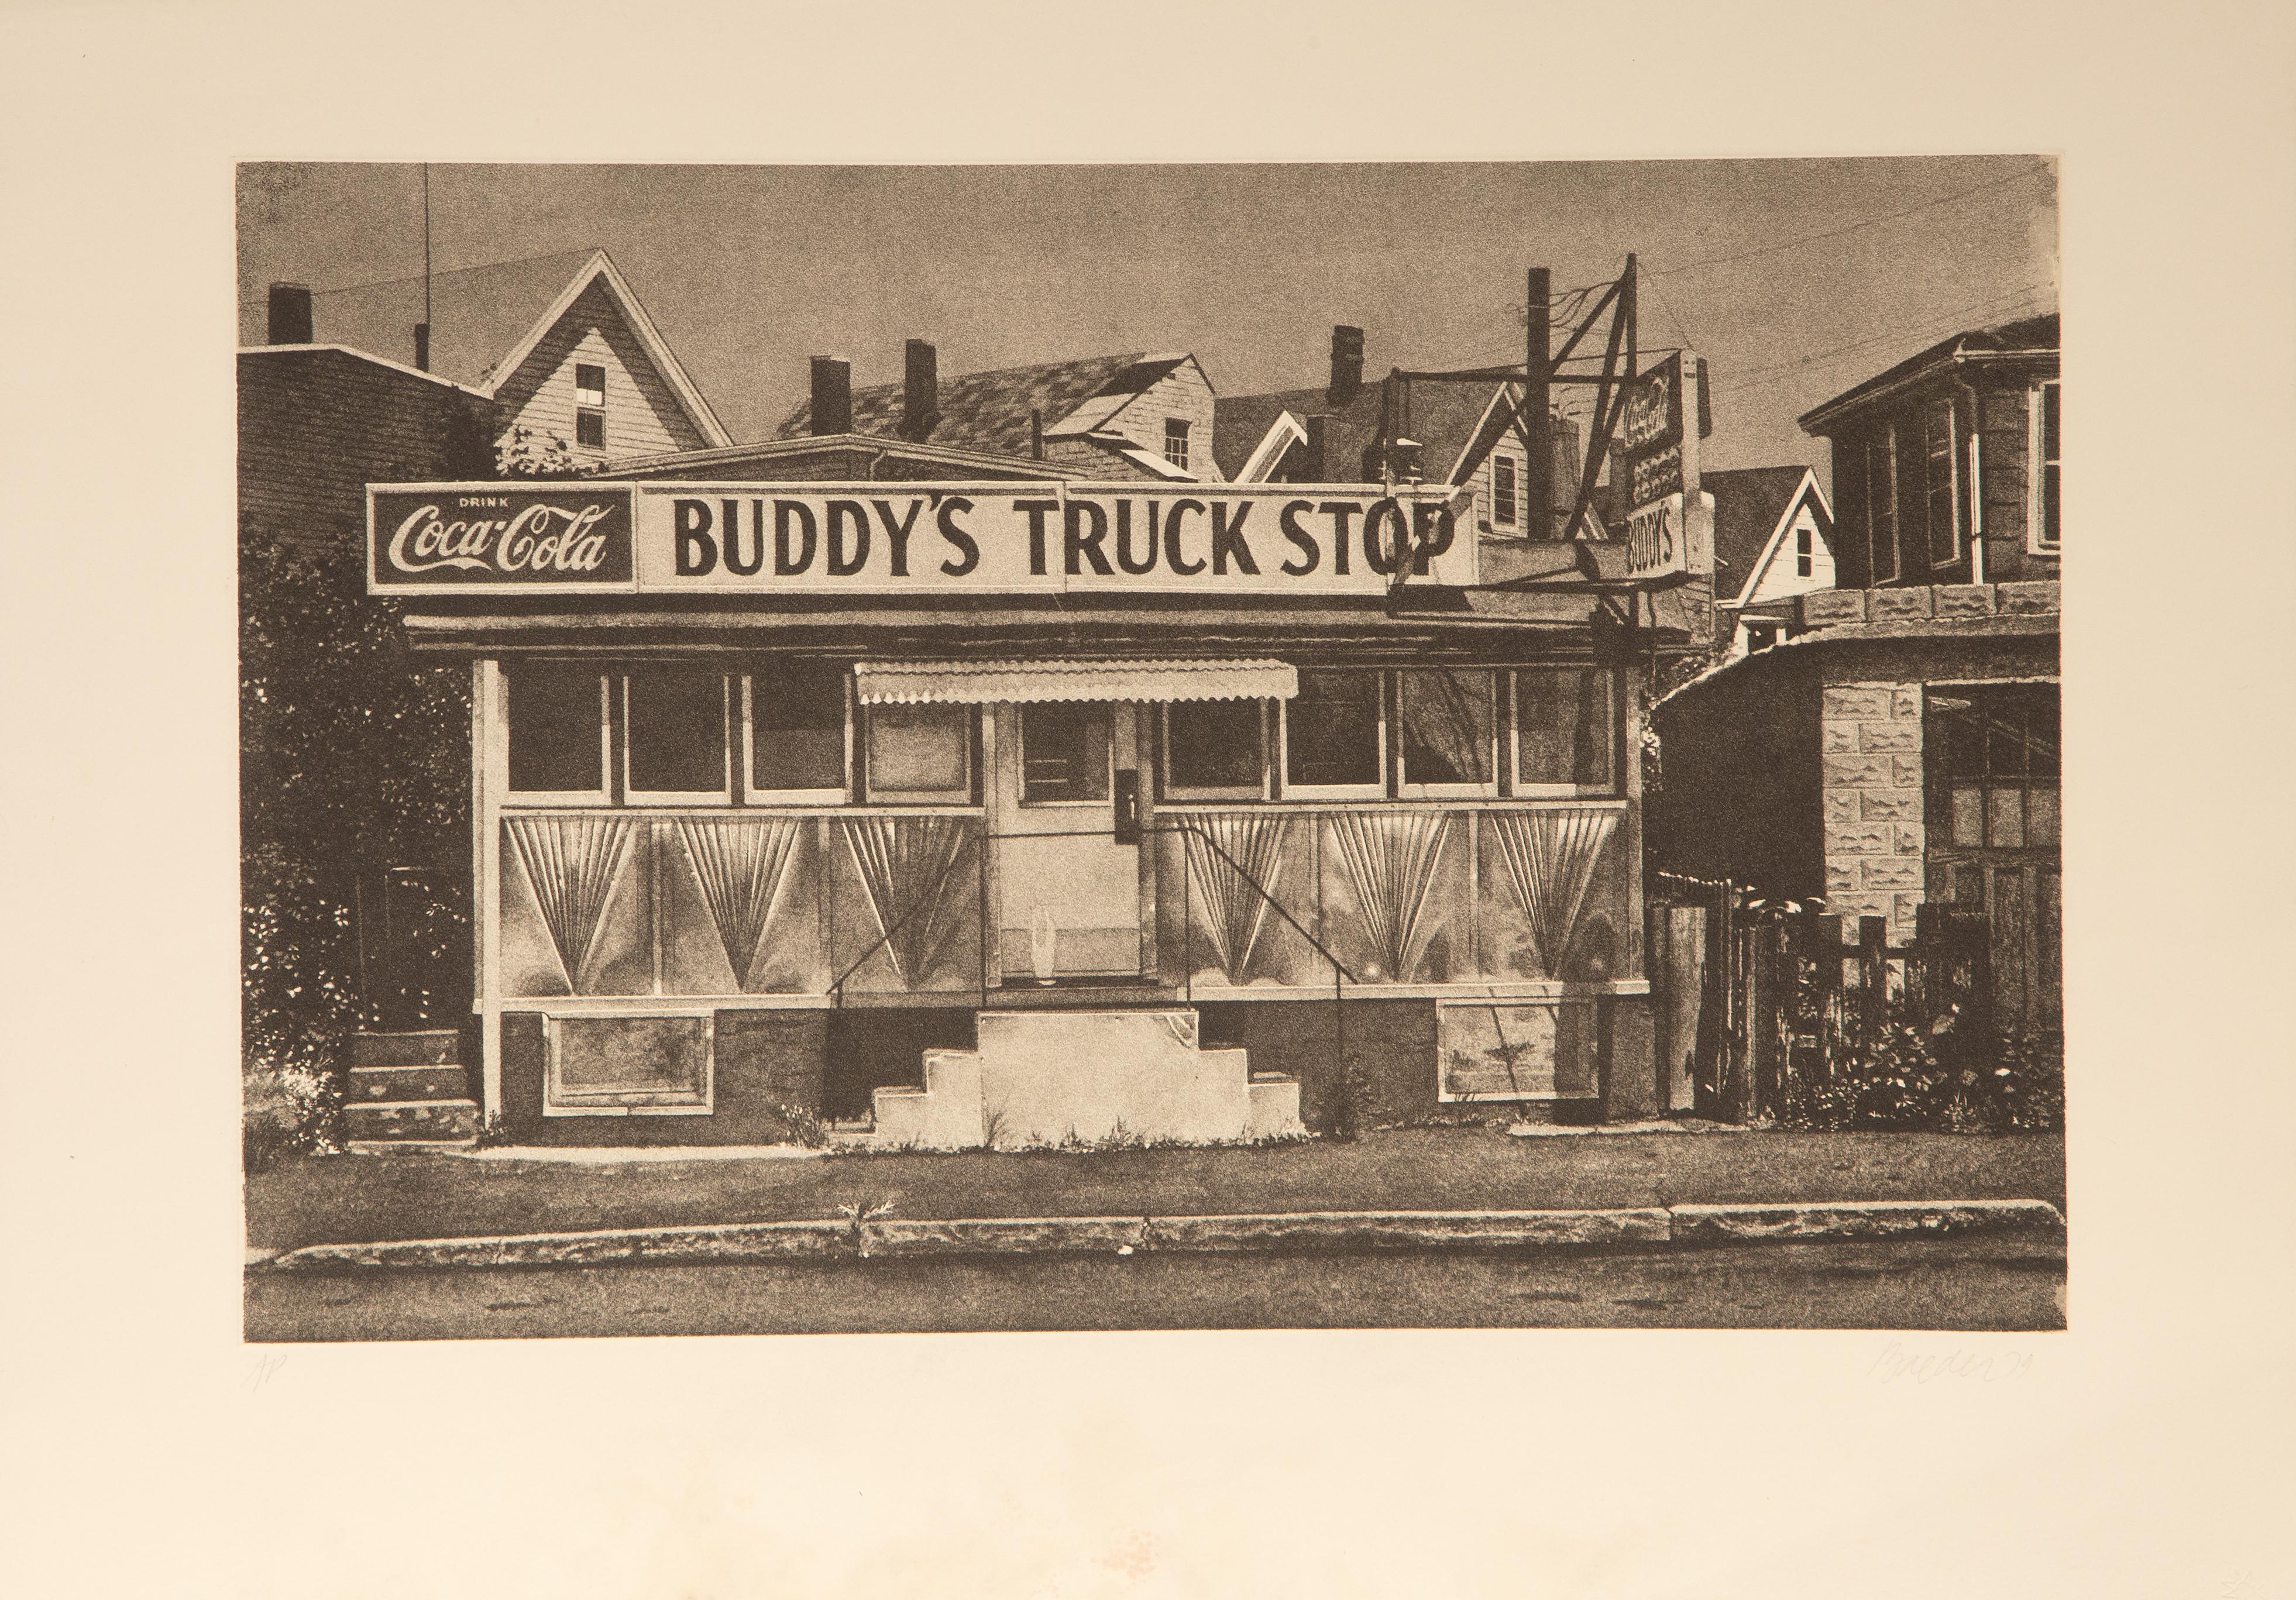 Buddy's Truck Stop
John Baeder, Amerikaner (1938)
Datum: 1979
Radierung auf Arches, signiert, nummeriert und datiert mit Bleistift
Ausgabe von AP
Bildgröße: 15,25 x 23,75 Zoll
Größe: 21 x 30 Zoll (53,34 x 76,2 cm)